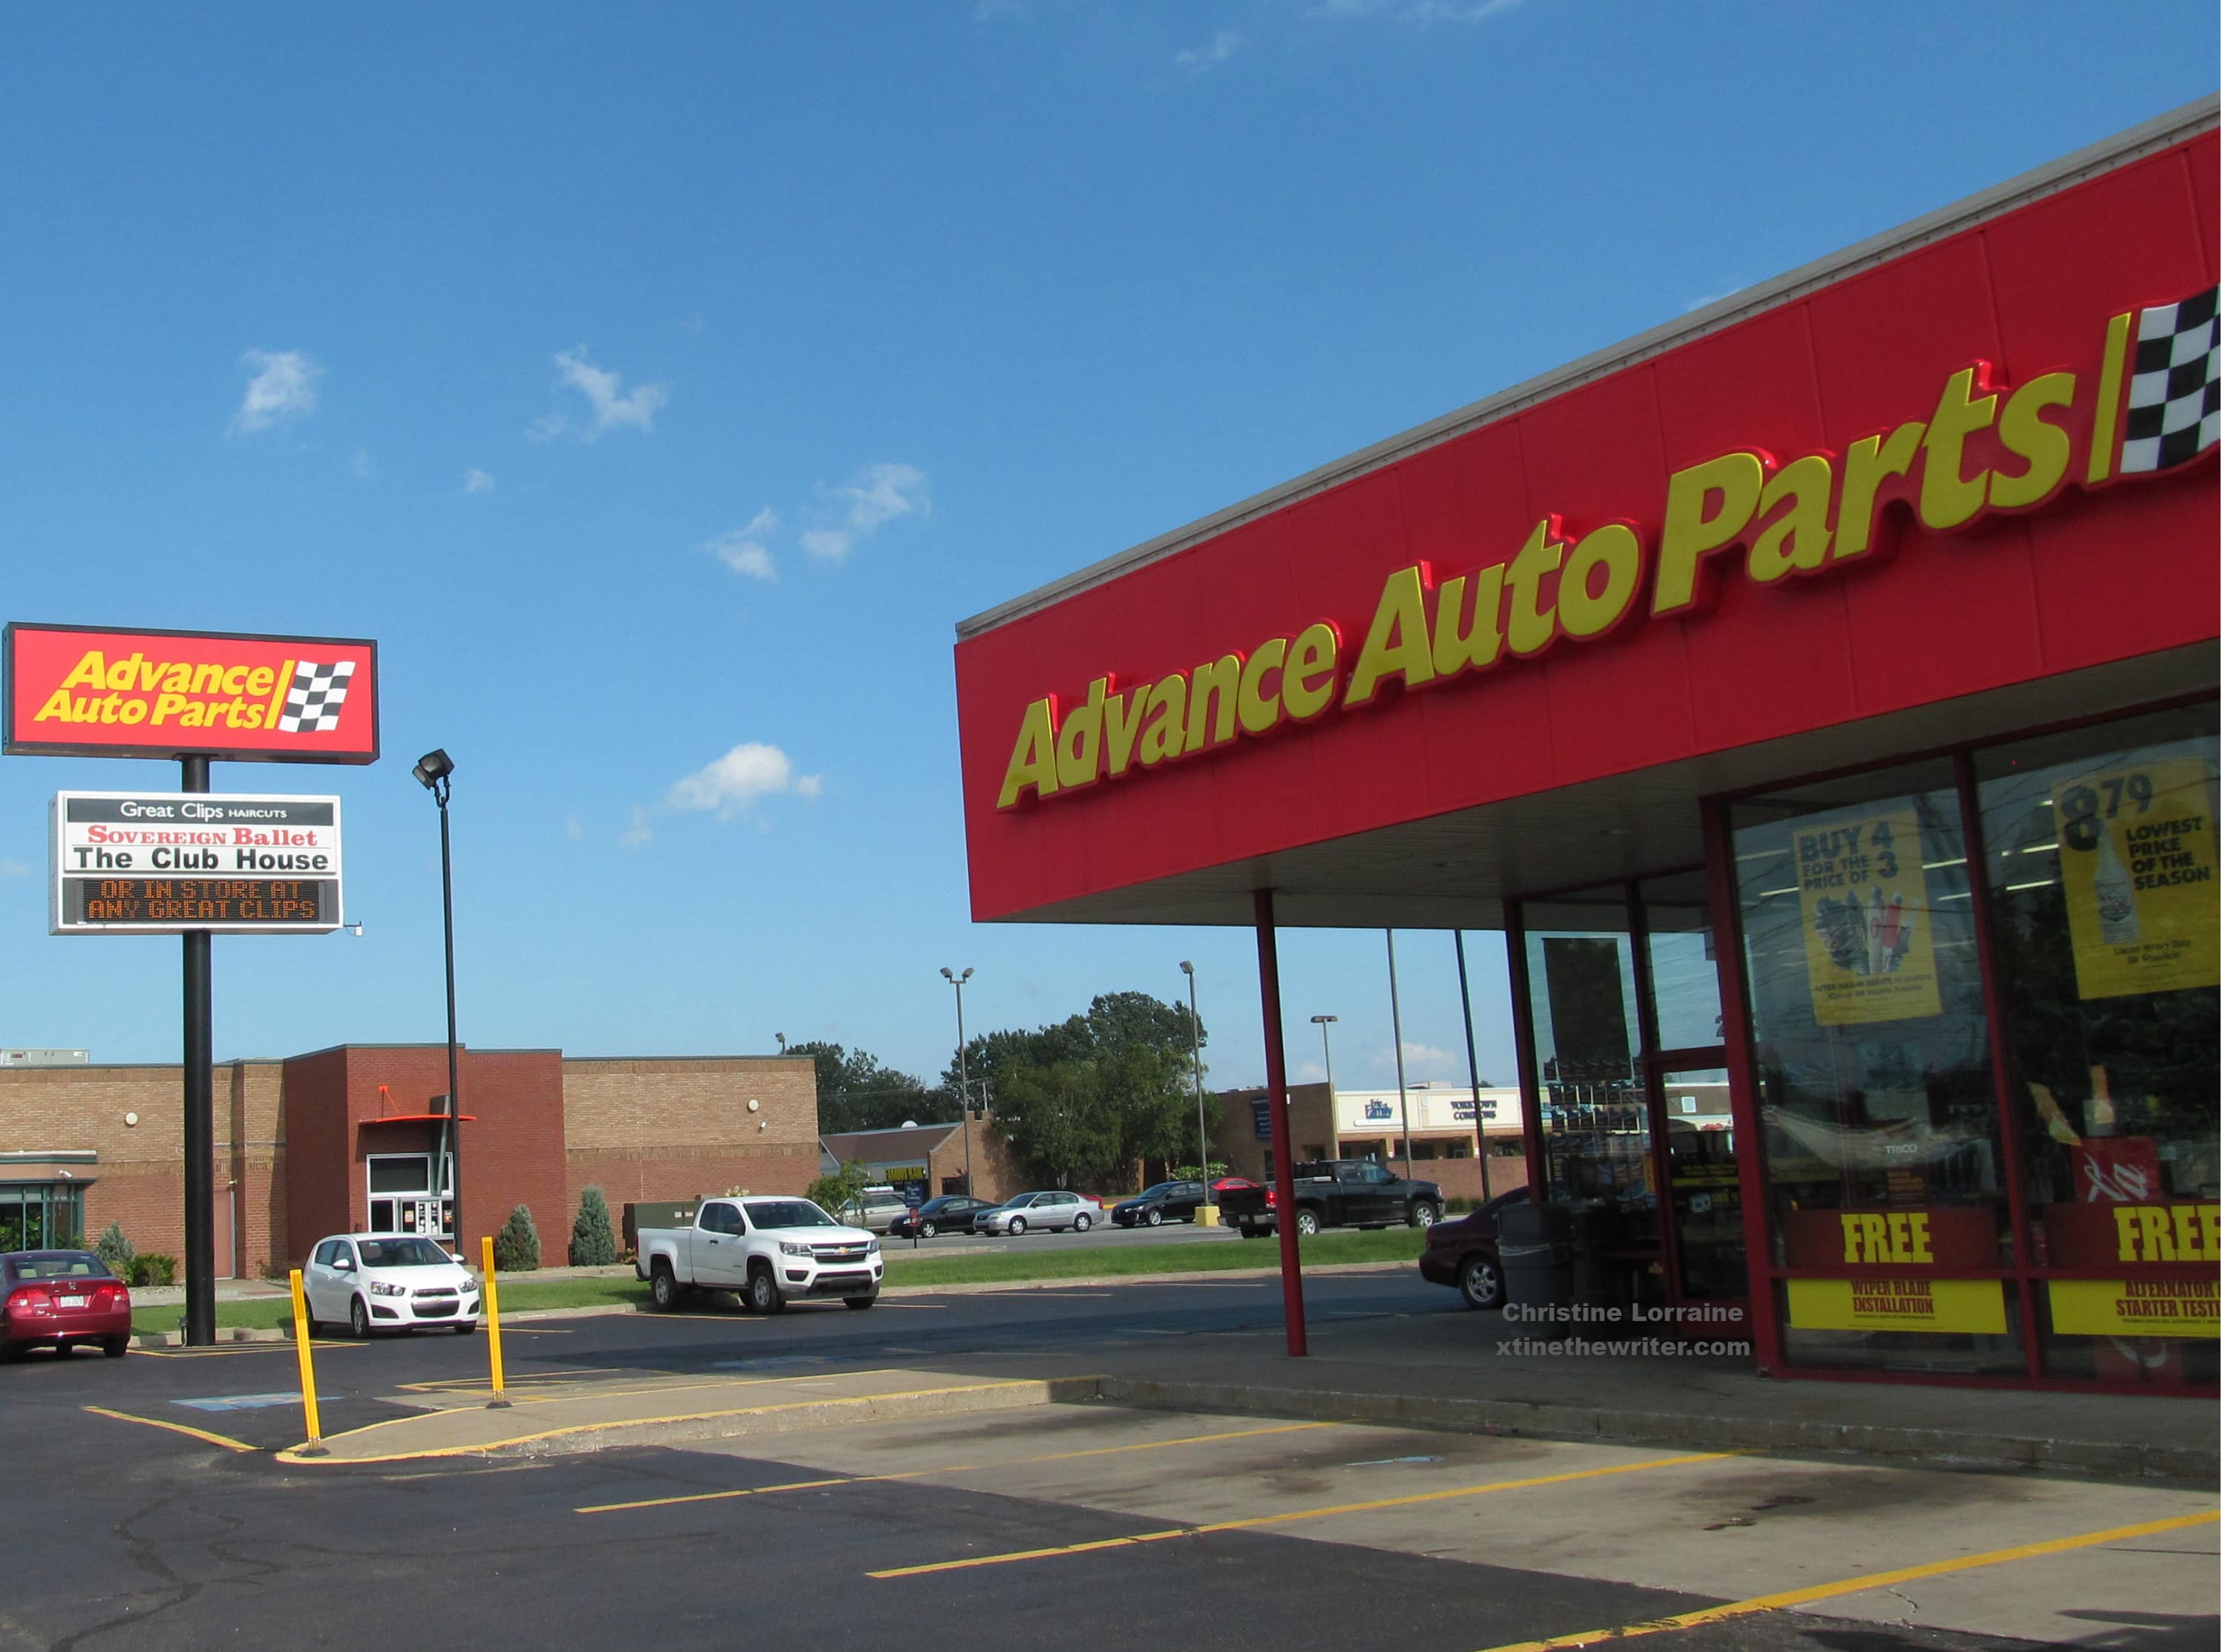 Advance Auto Parts - Erie (PA 16505), US, auto parts shop near me